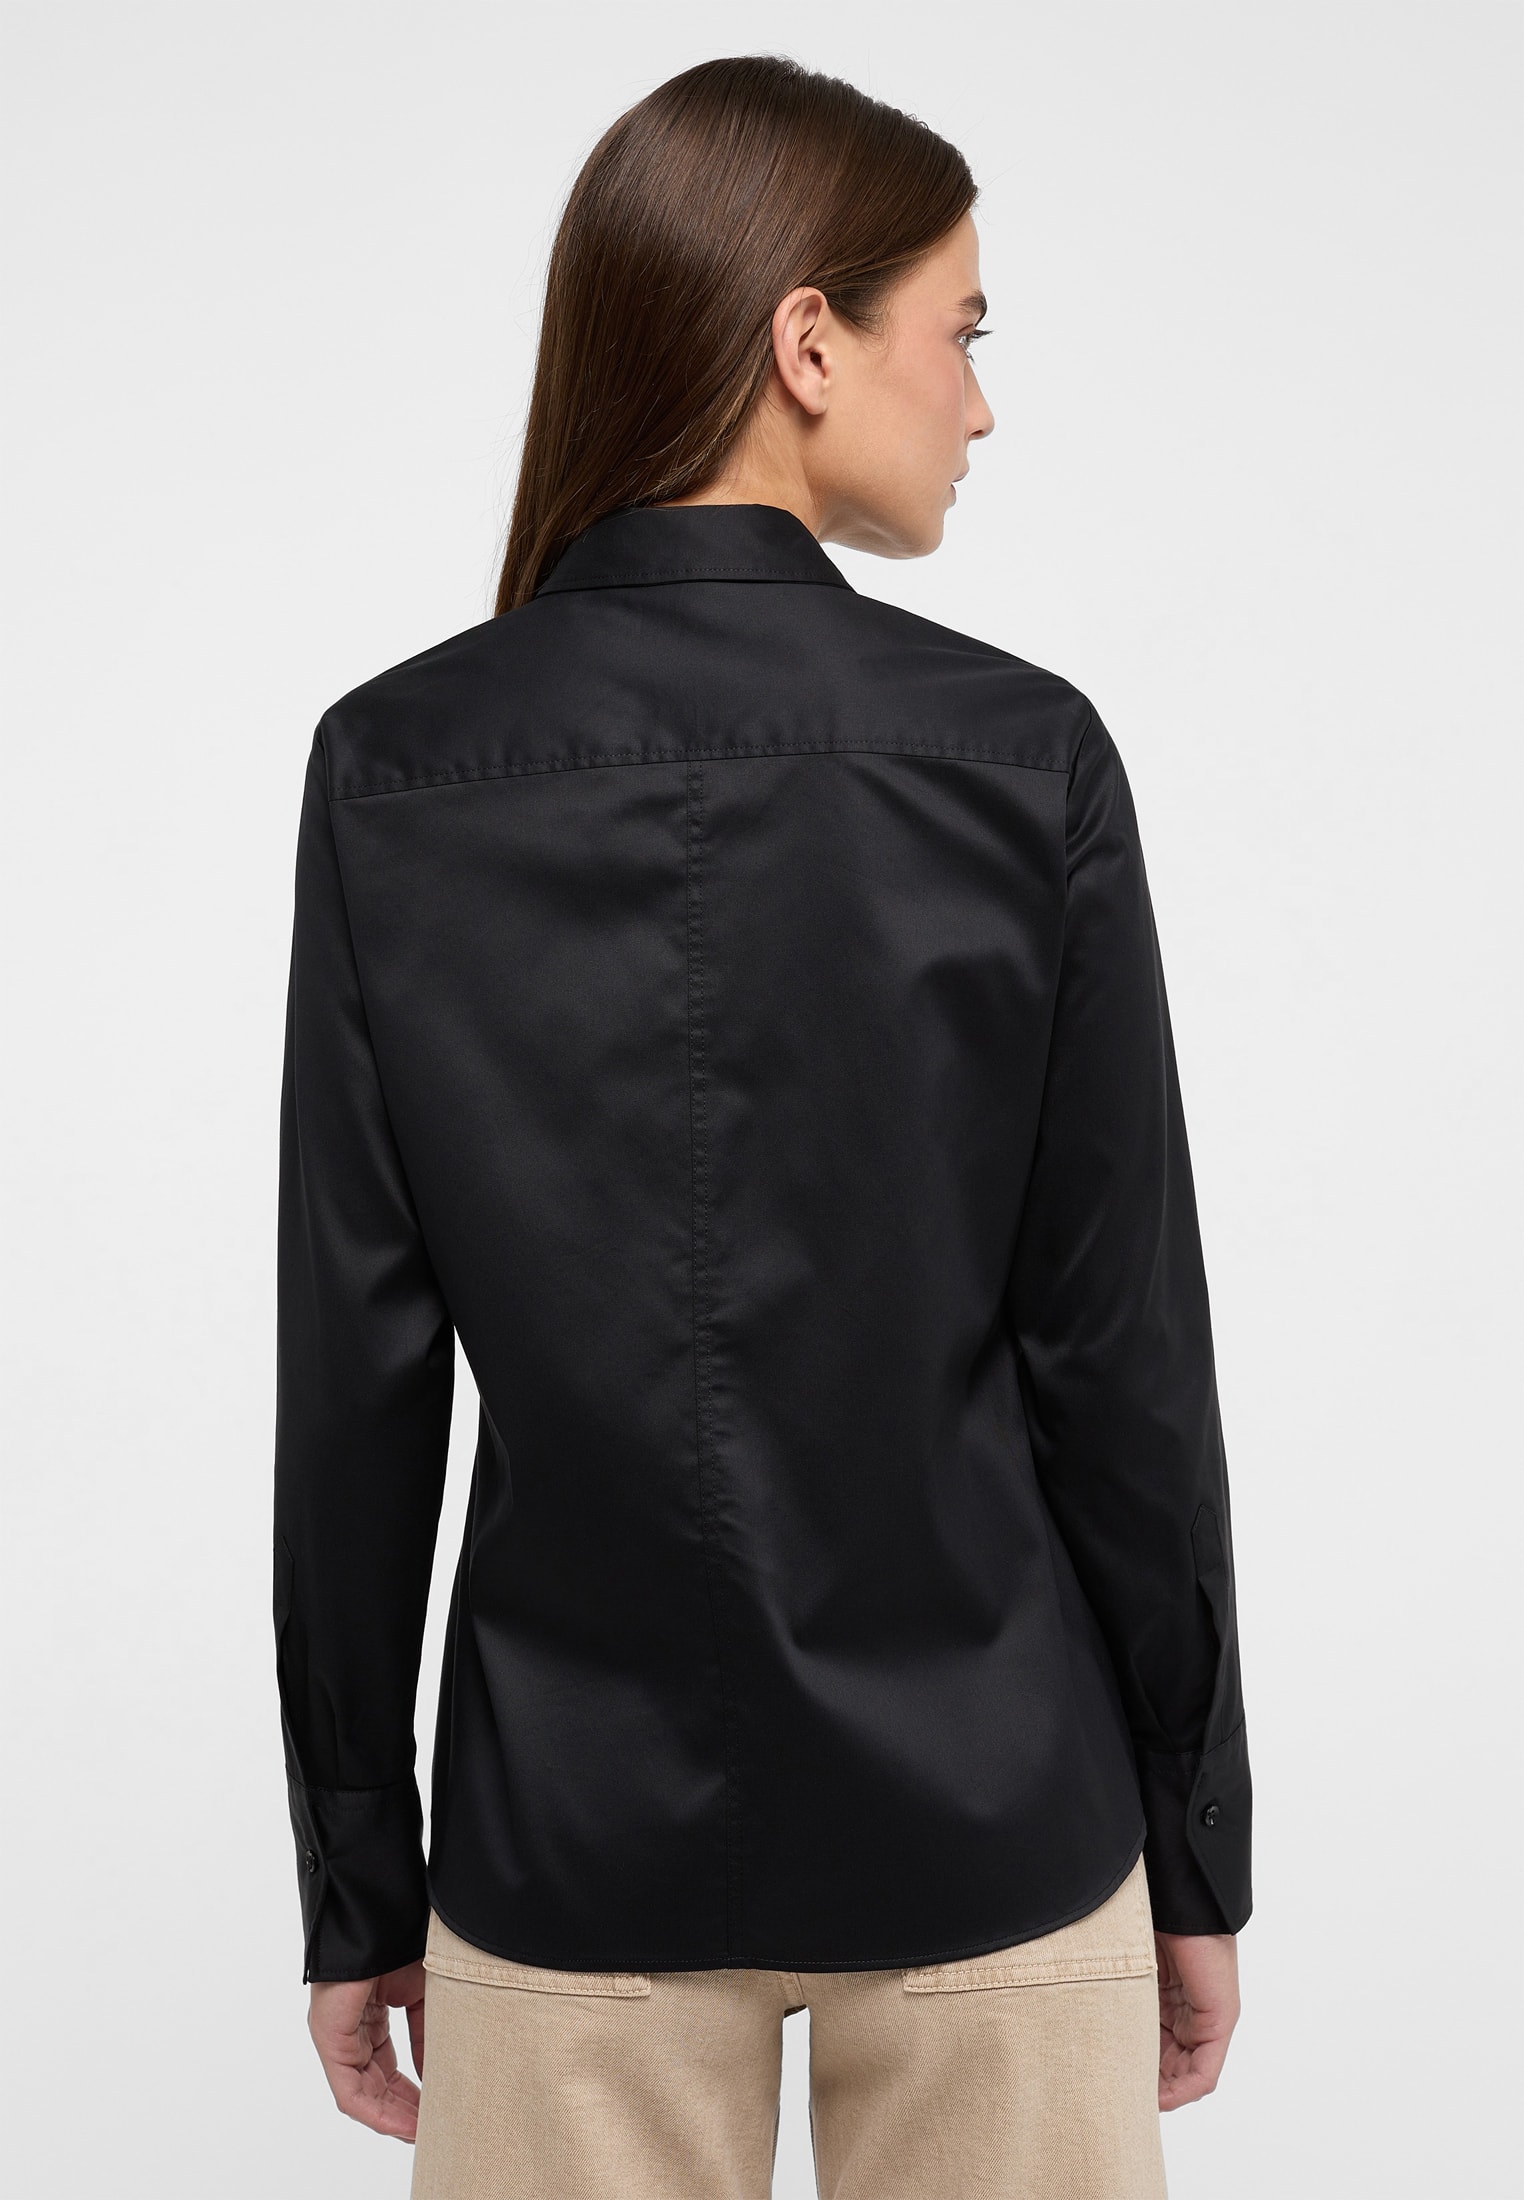 unifarben Bluse in | Langarm | schwarz | 2BL00075-03-91-48-1/1 Shirt 48 schwarz Cover |